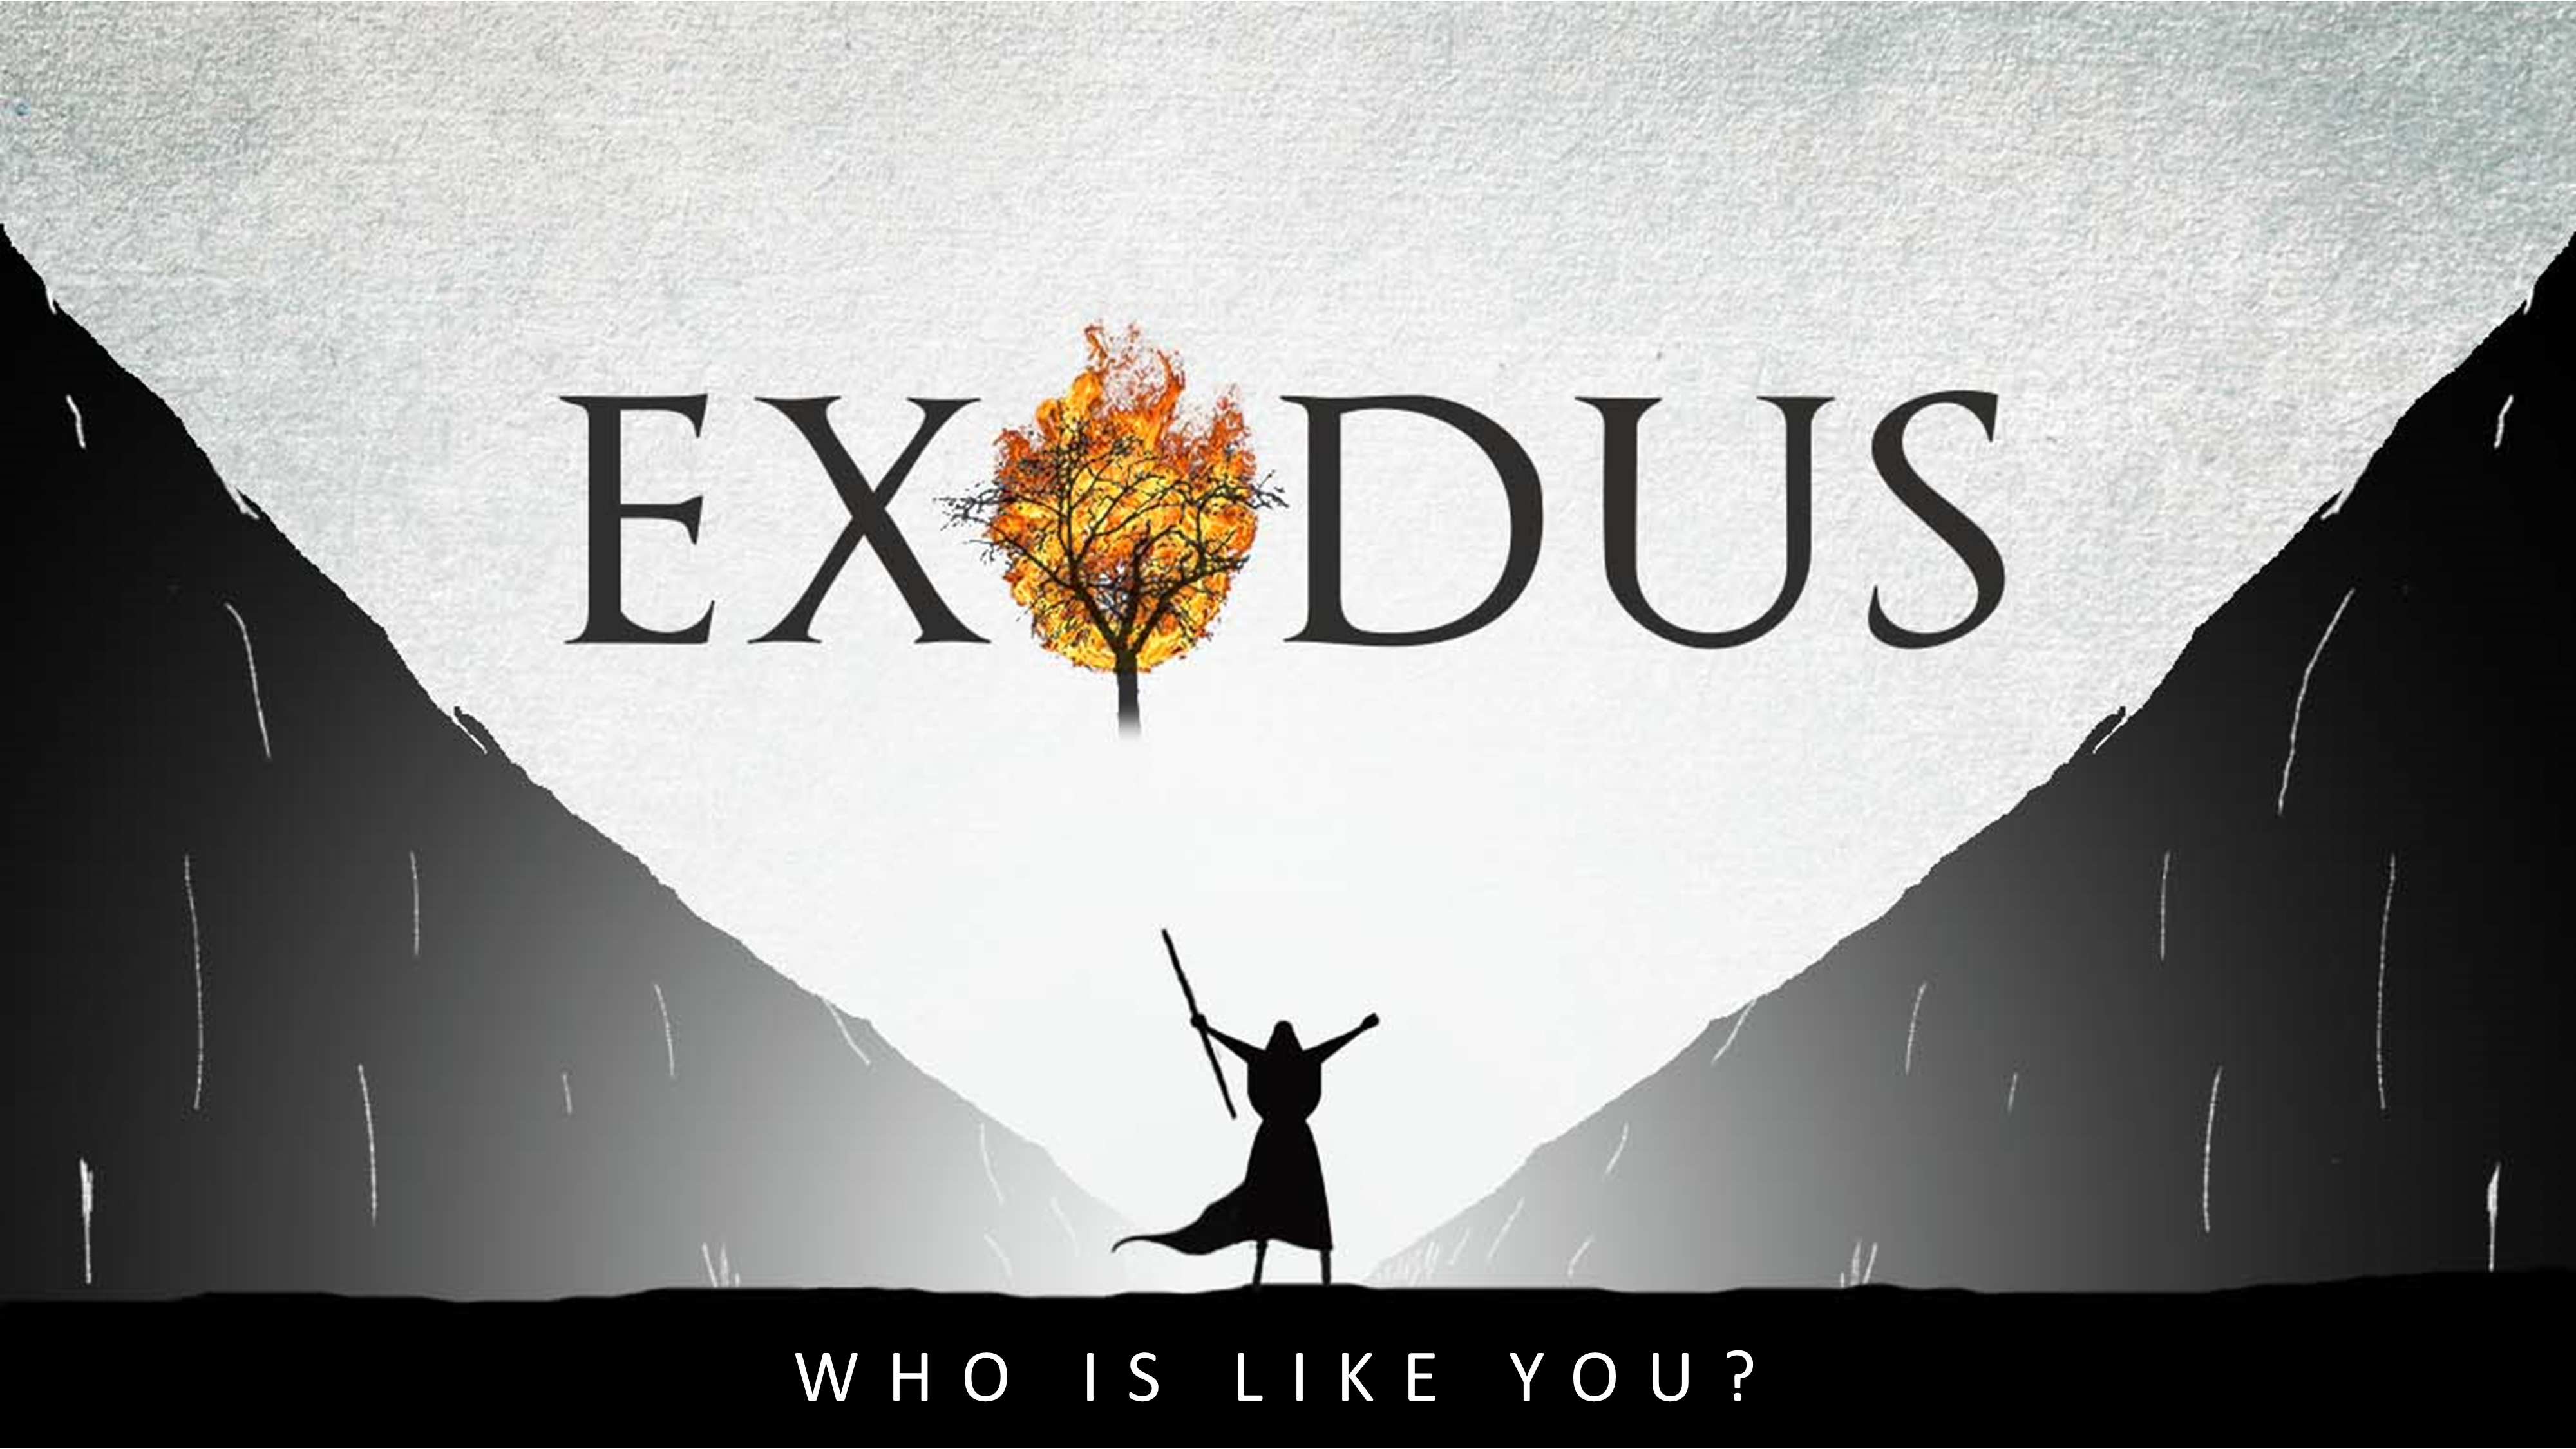 Exodus - "Who is Like You?"